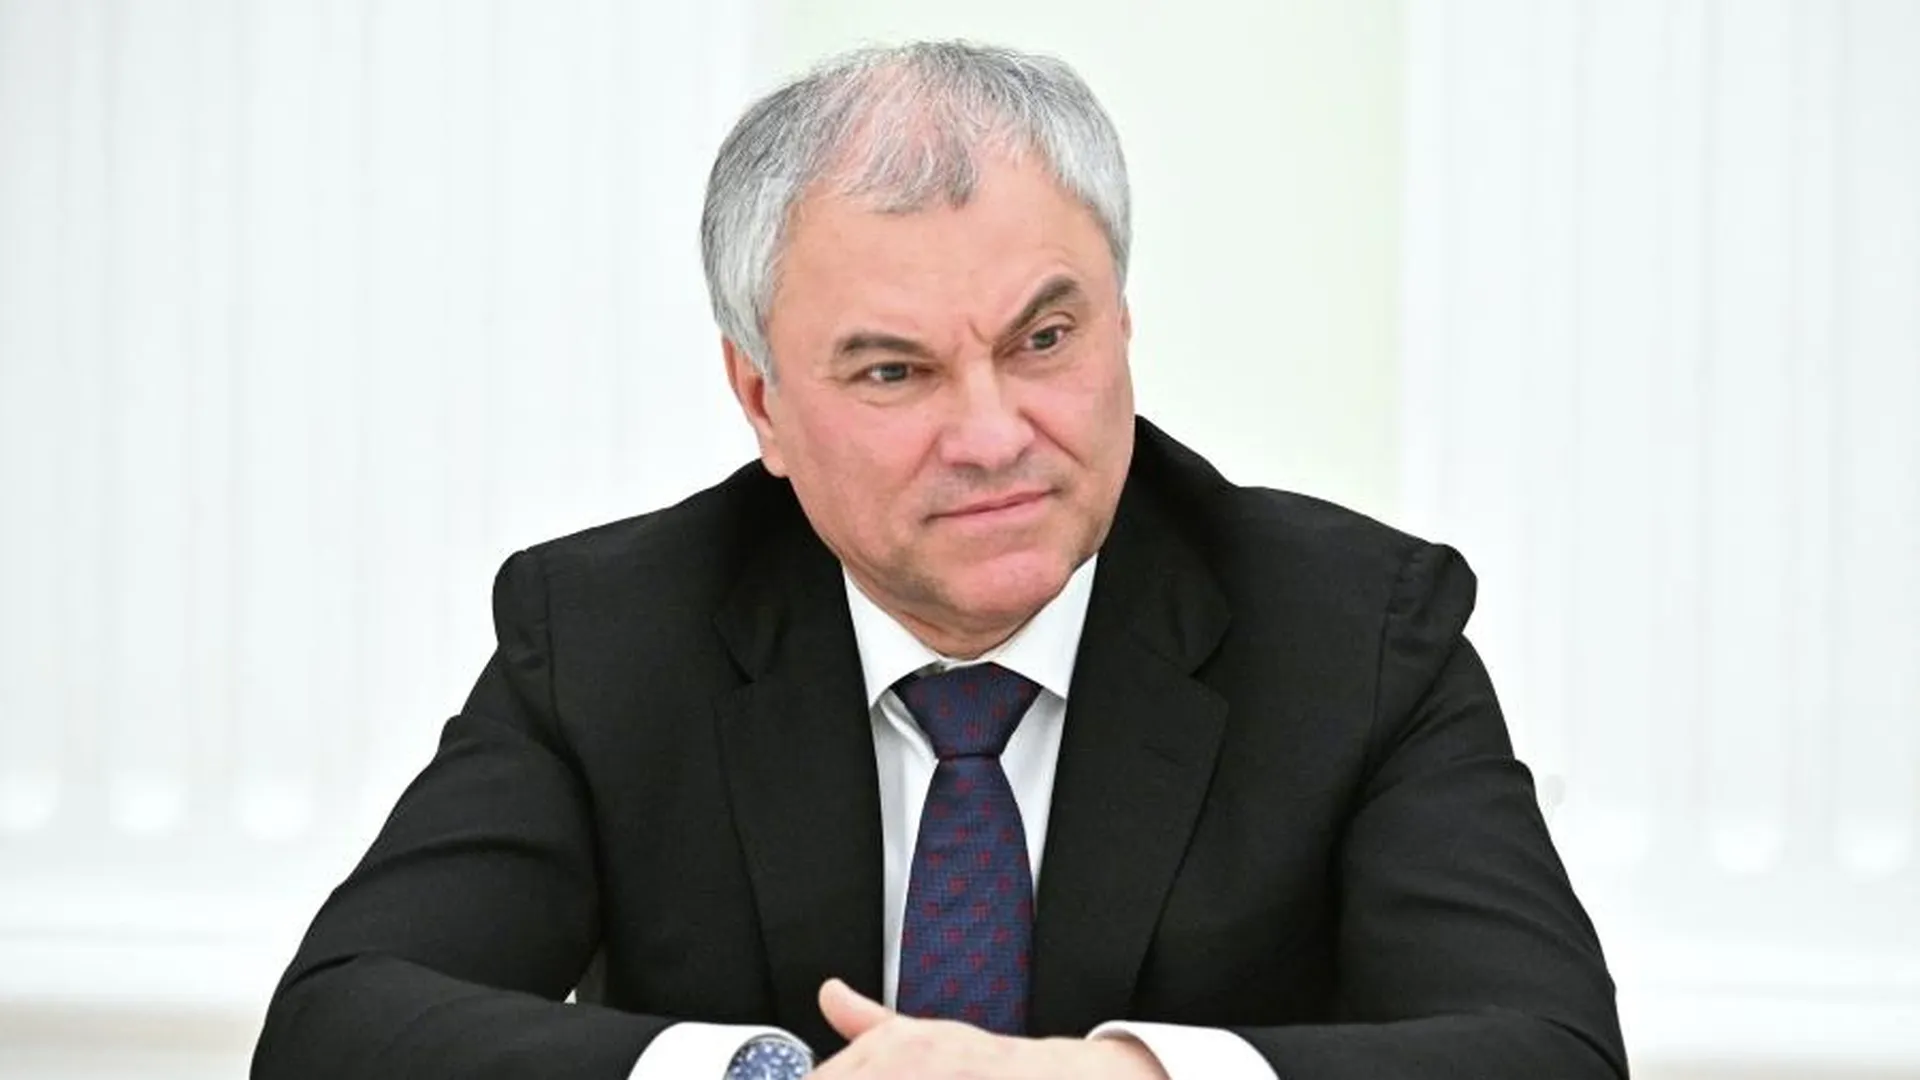 Володин высказался о ситуации со скандалом вокруг закона об иноагентах в Грузии